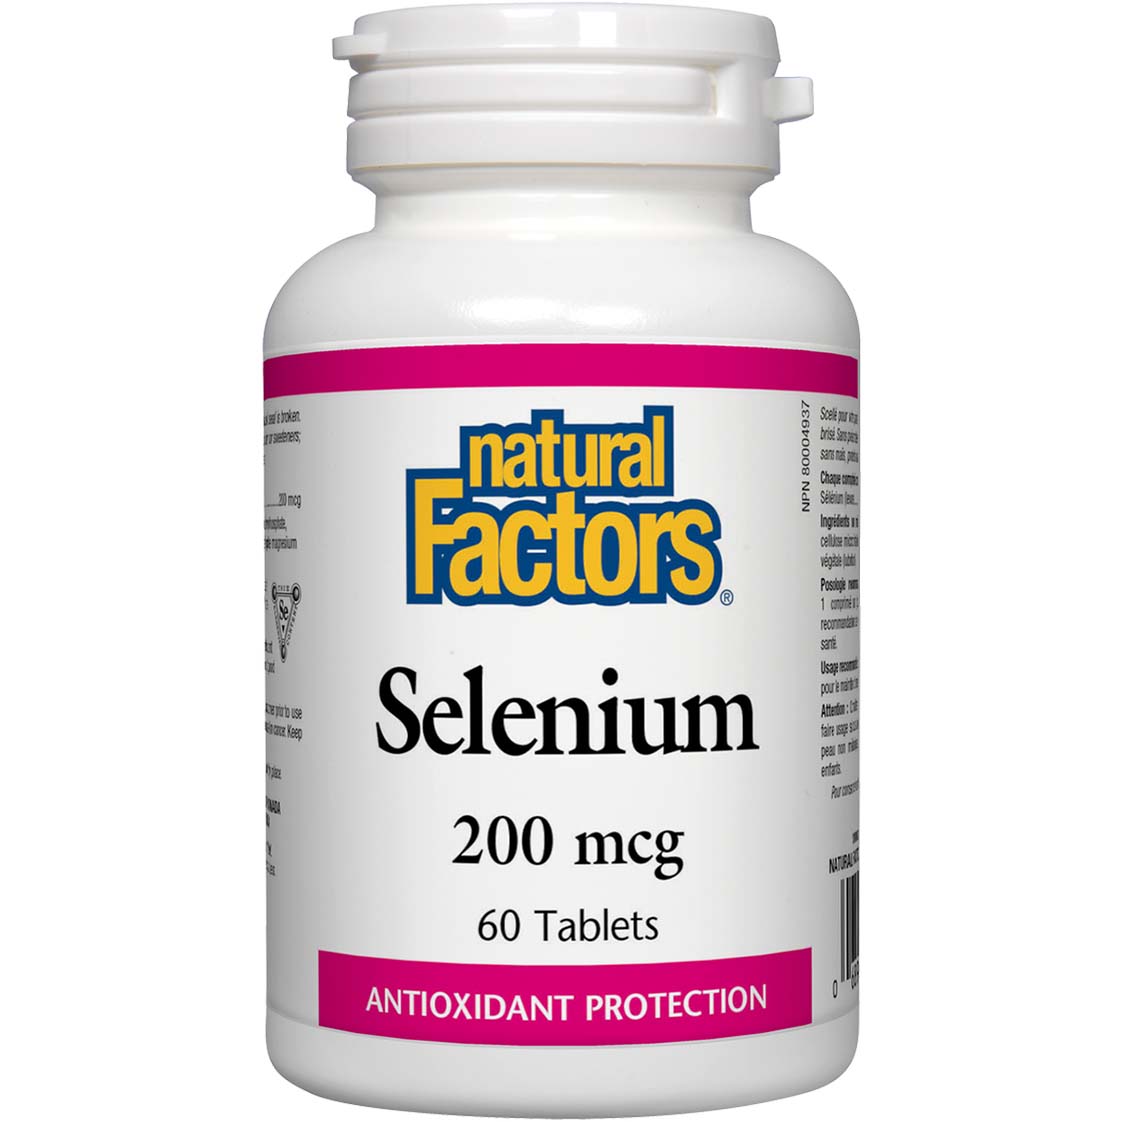 Natural Factors Selenium, 200 mcg, 60 Tablets